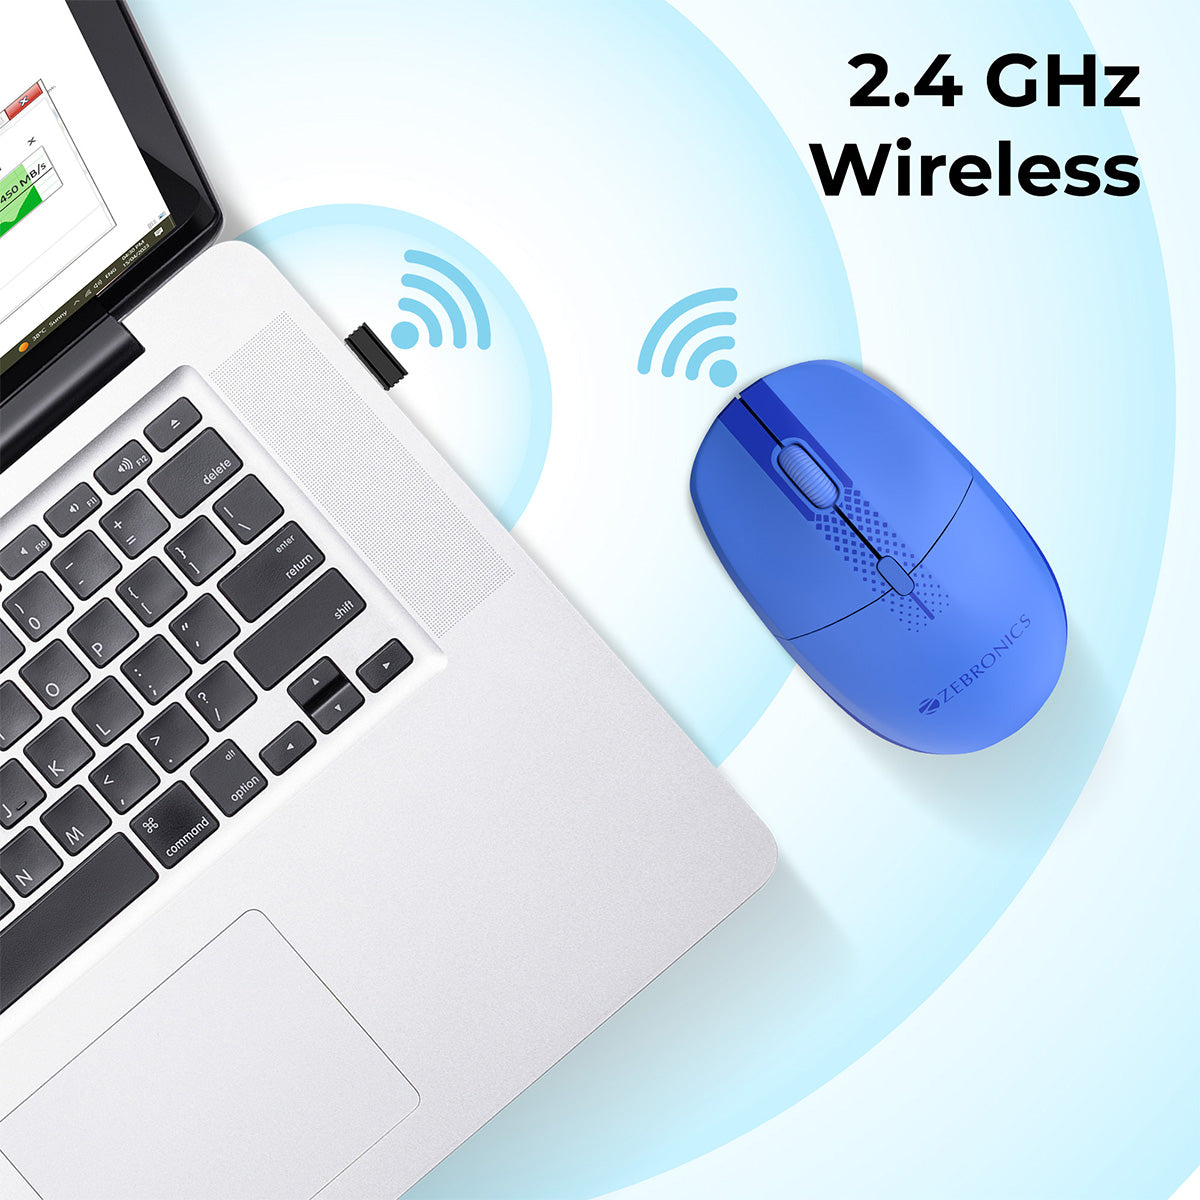 Zeb-Pop - Wireless Mouse - Zebronics